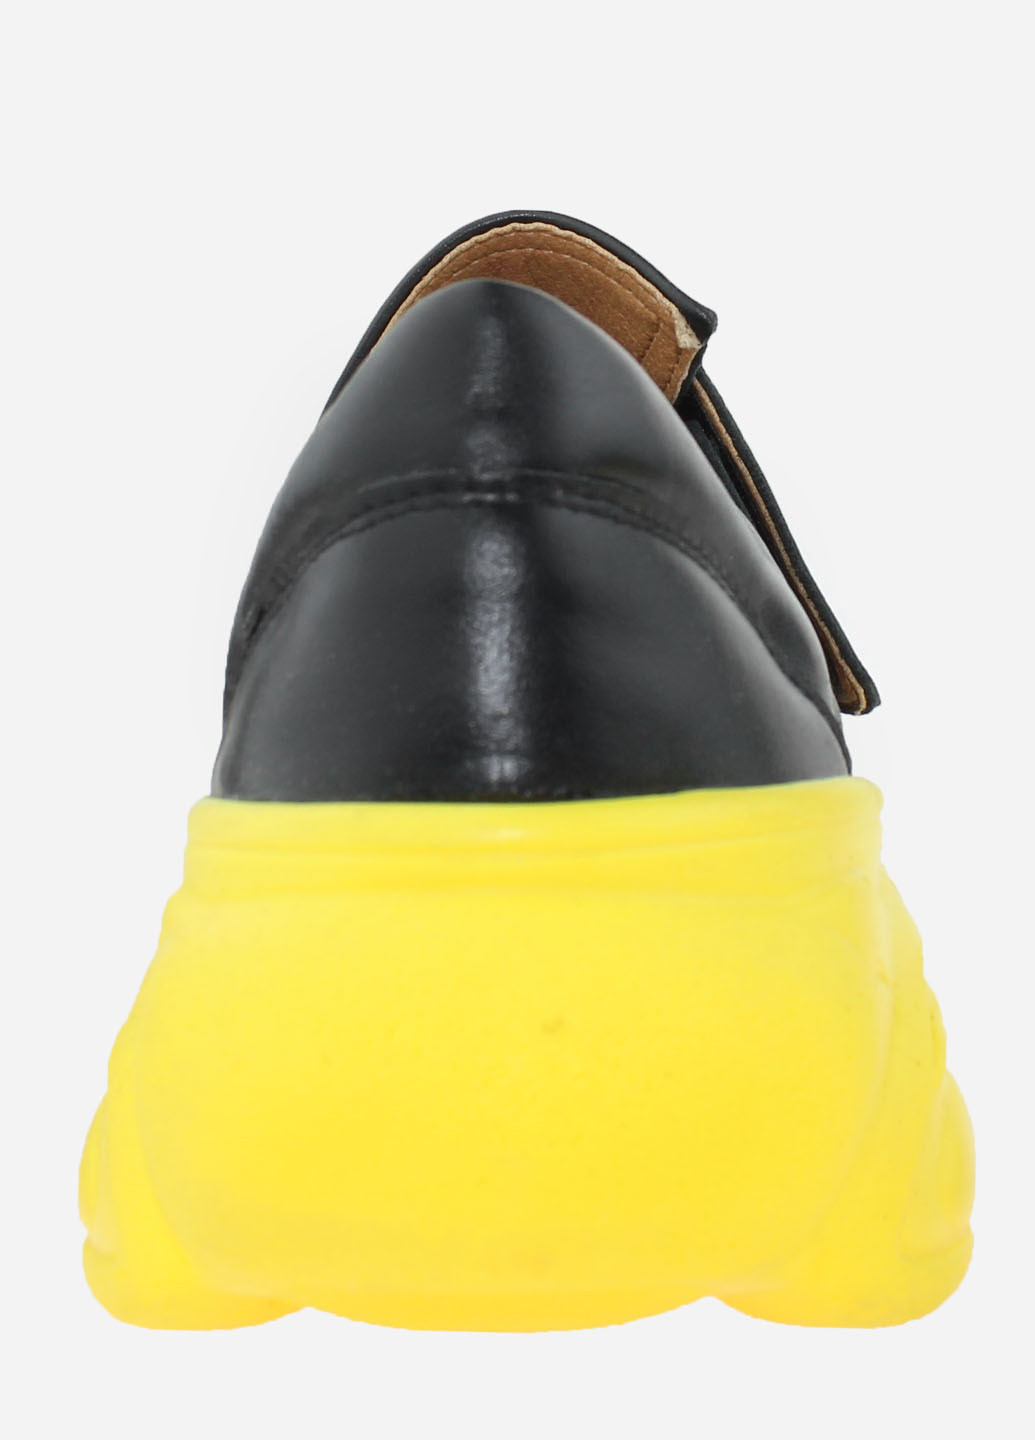 Черные демисезонные кроссовки rh309-1 черный Hitcher